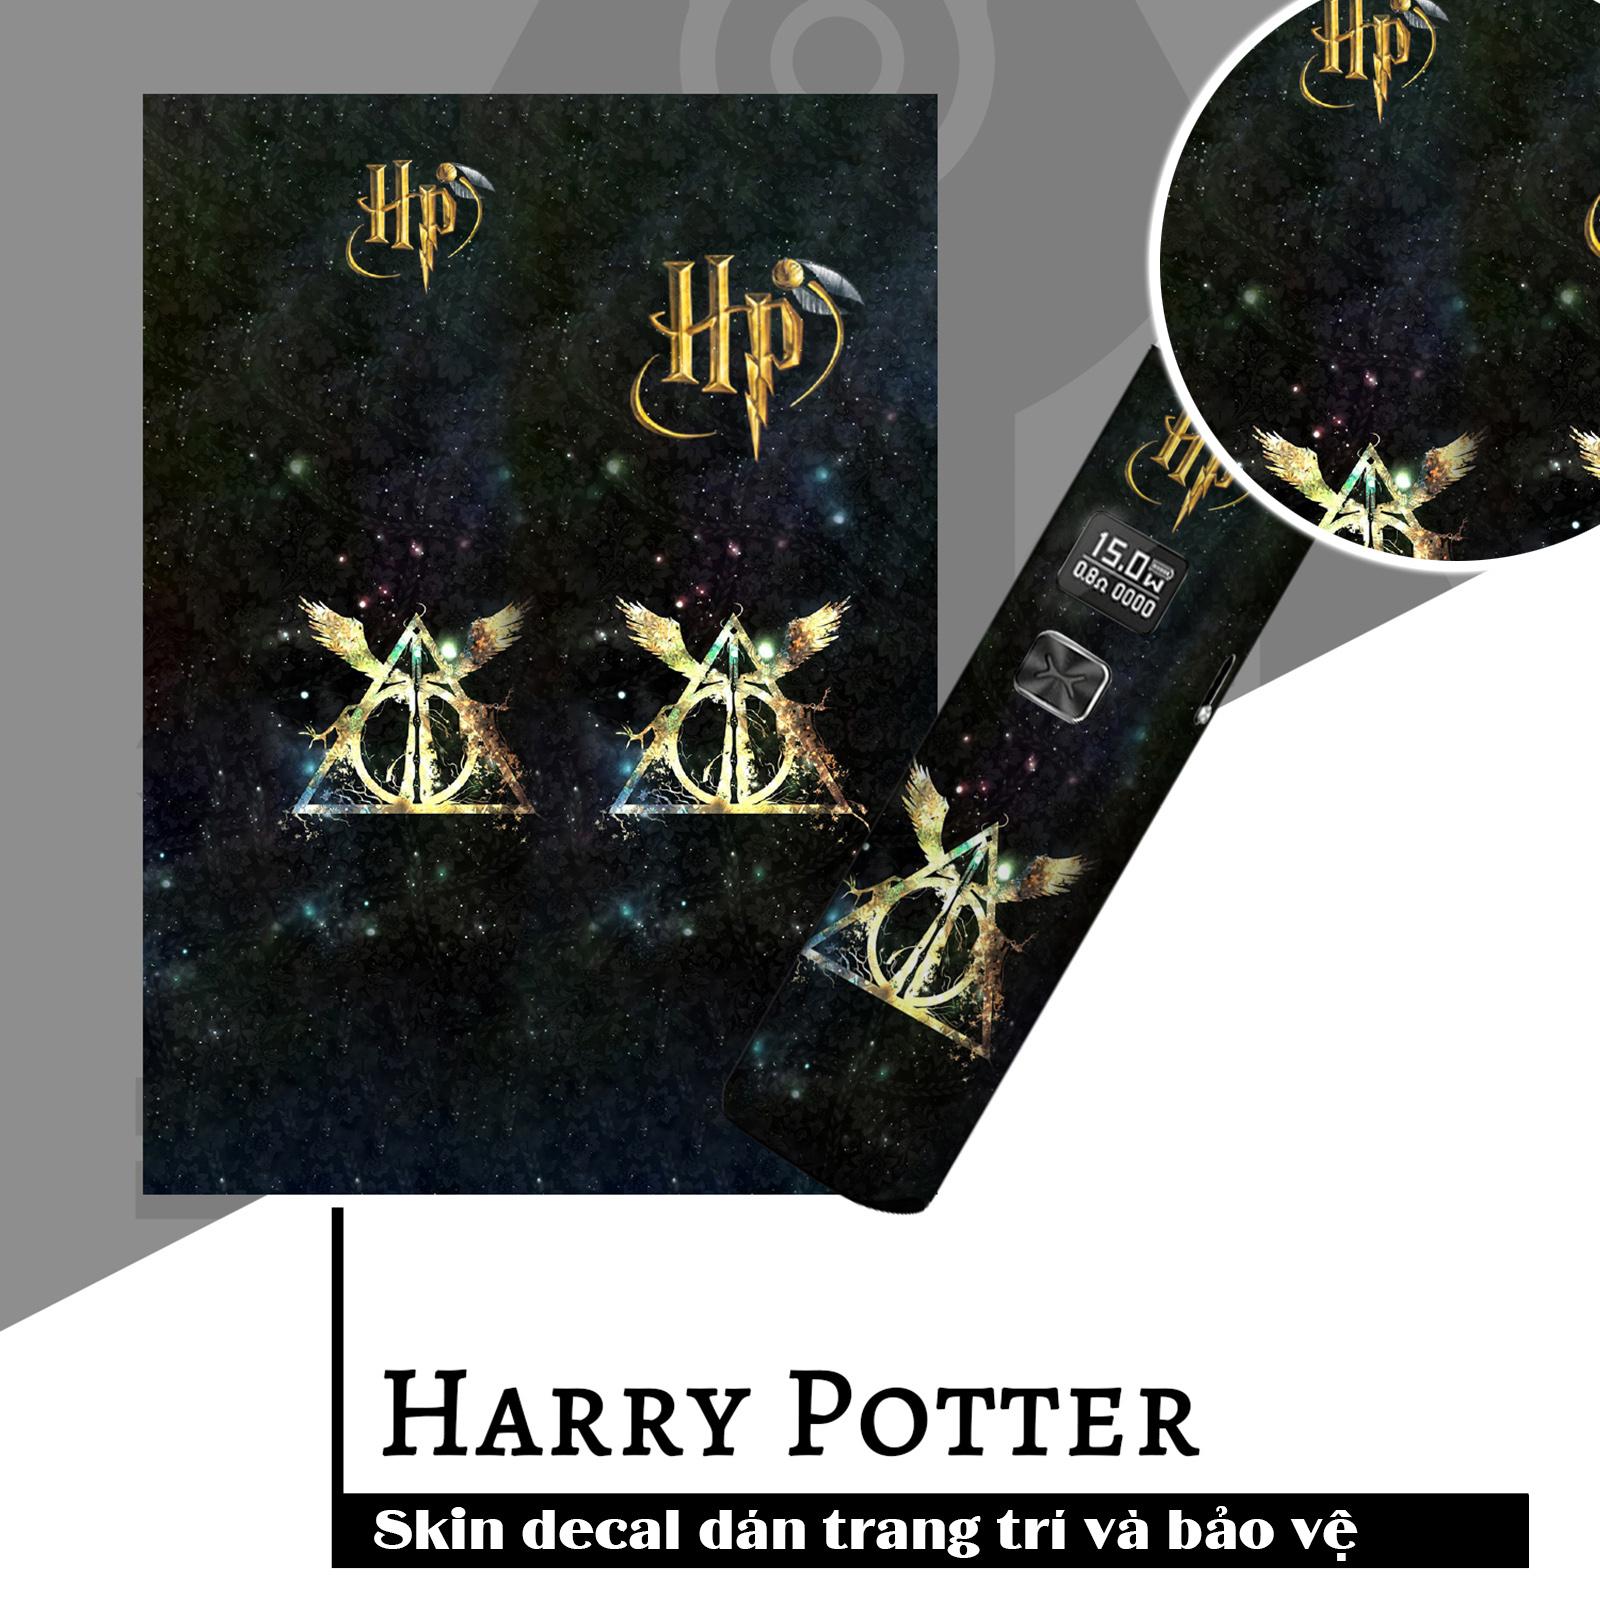 Skin dán Xlim V1, V2, SE mẫu Ký hiệu bảo bối tử thần Harry Potter (dễ dán, đã cắt sẵn chi tiết)